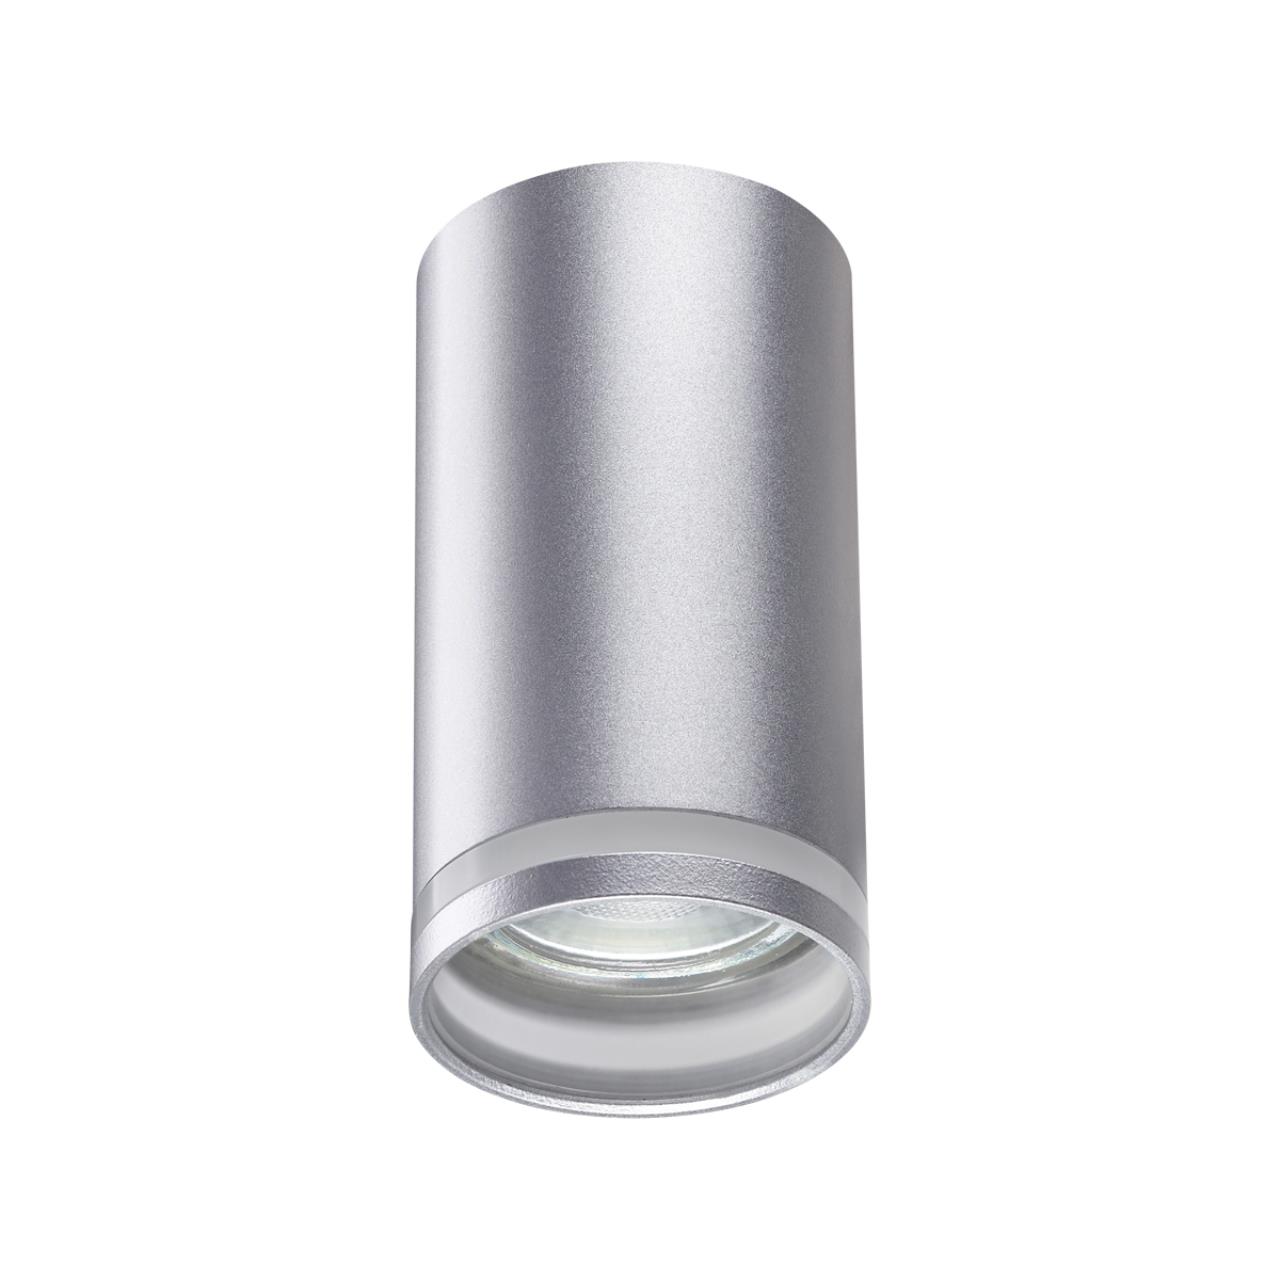 Светильник 5 см, Novotech Over Ular 370891, серебро